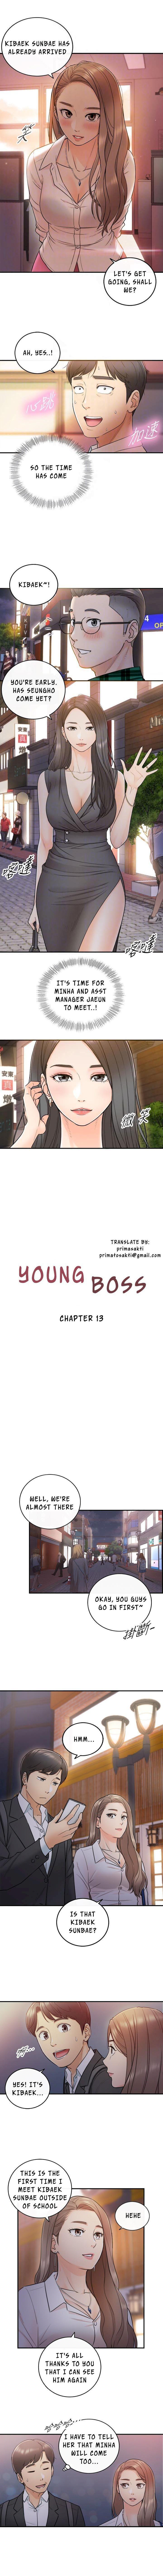 Young Boss Manhwa 01-73 110